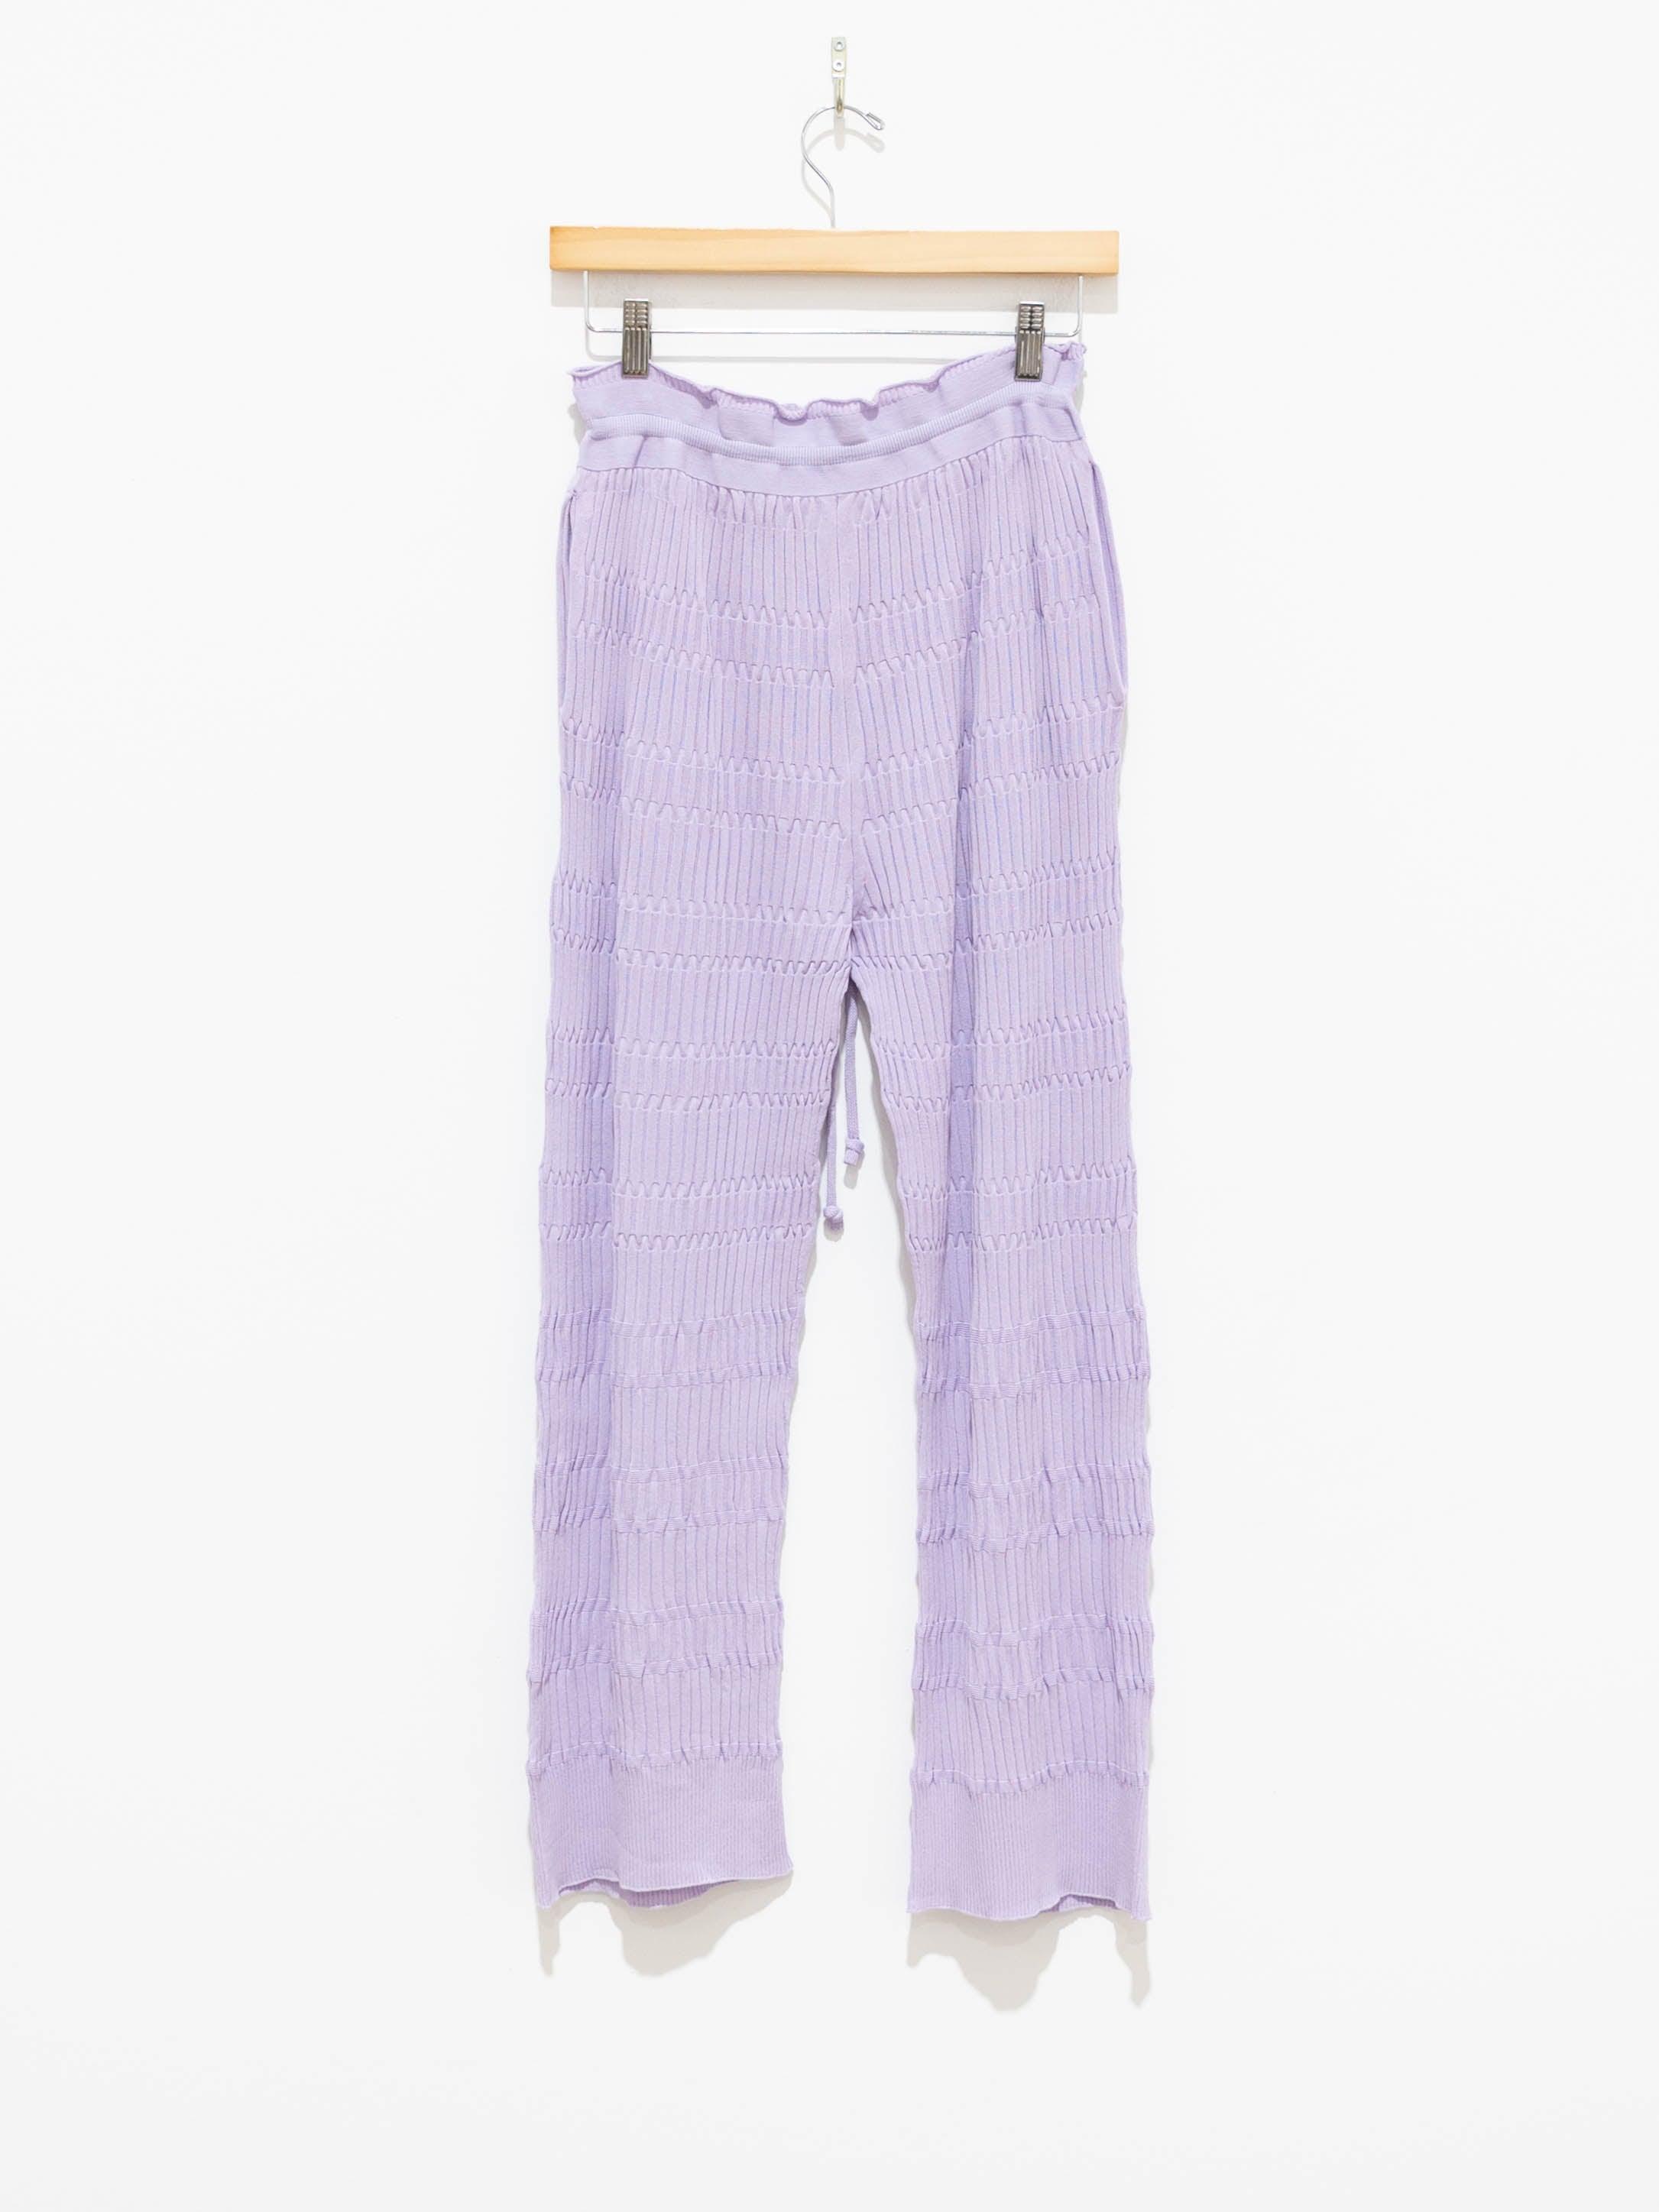 Namu Shop - Unfil High Twist Cotton Ribbed Knit Pants - Lilac